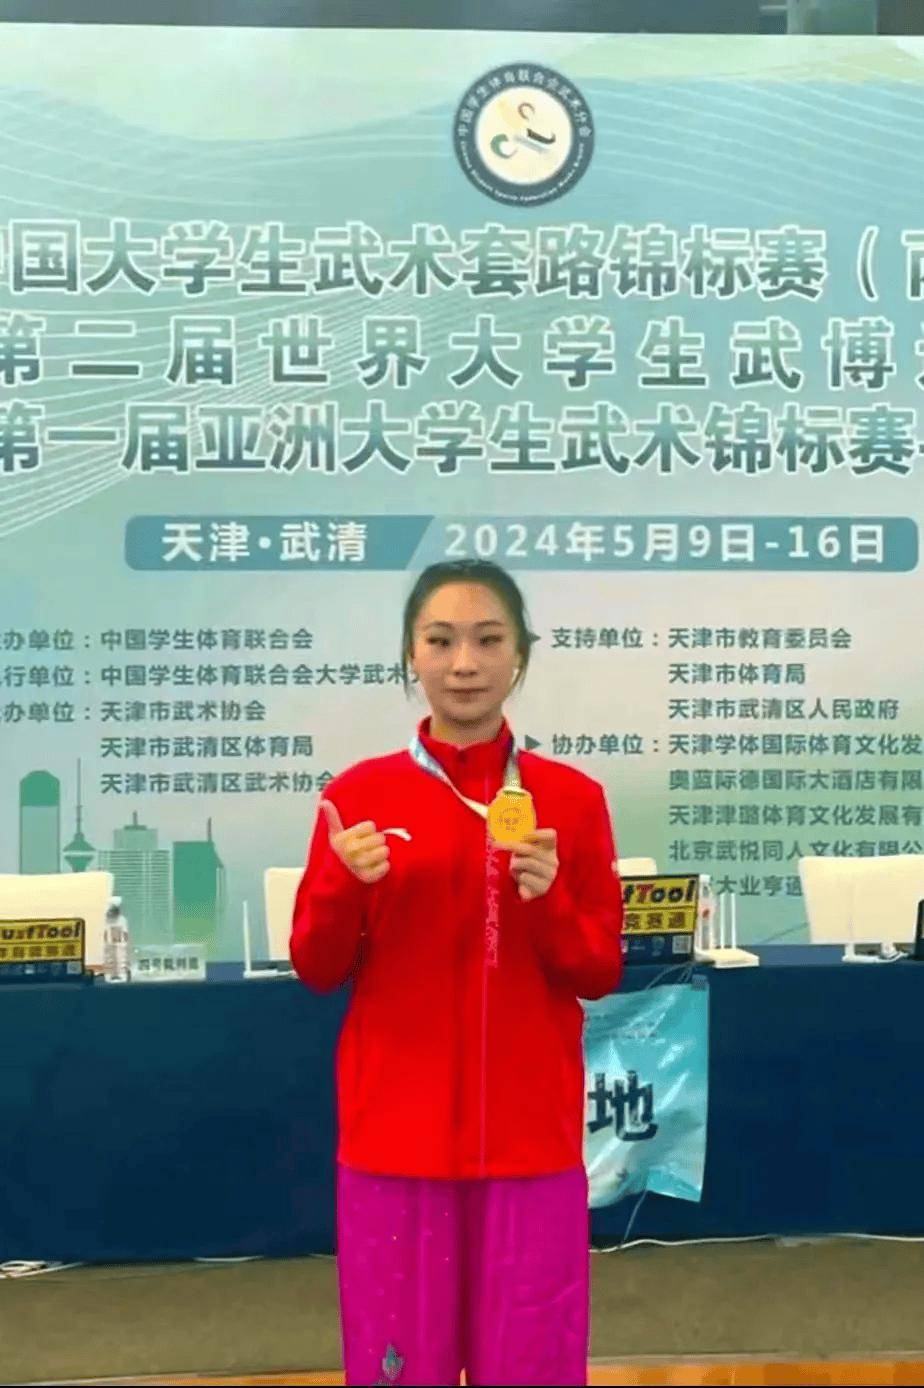 输送的运动员邓瑜文,夺得2024中国大学生武术套路锦标赛冠军